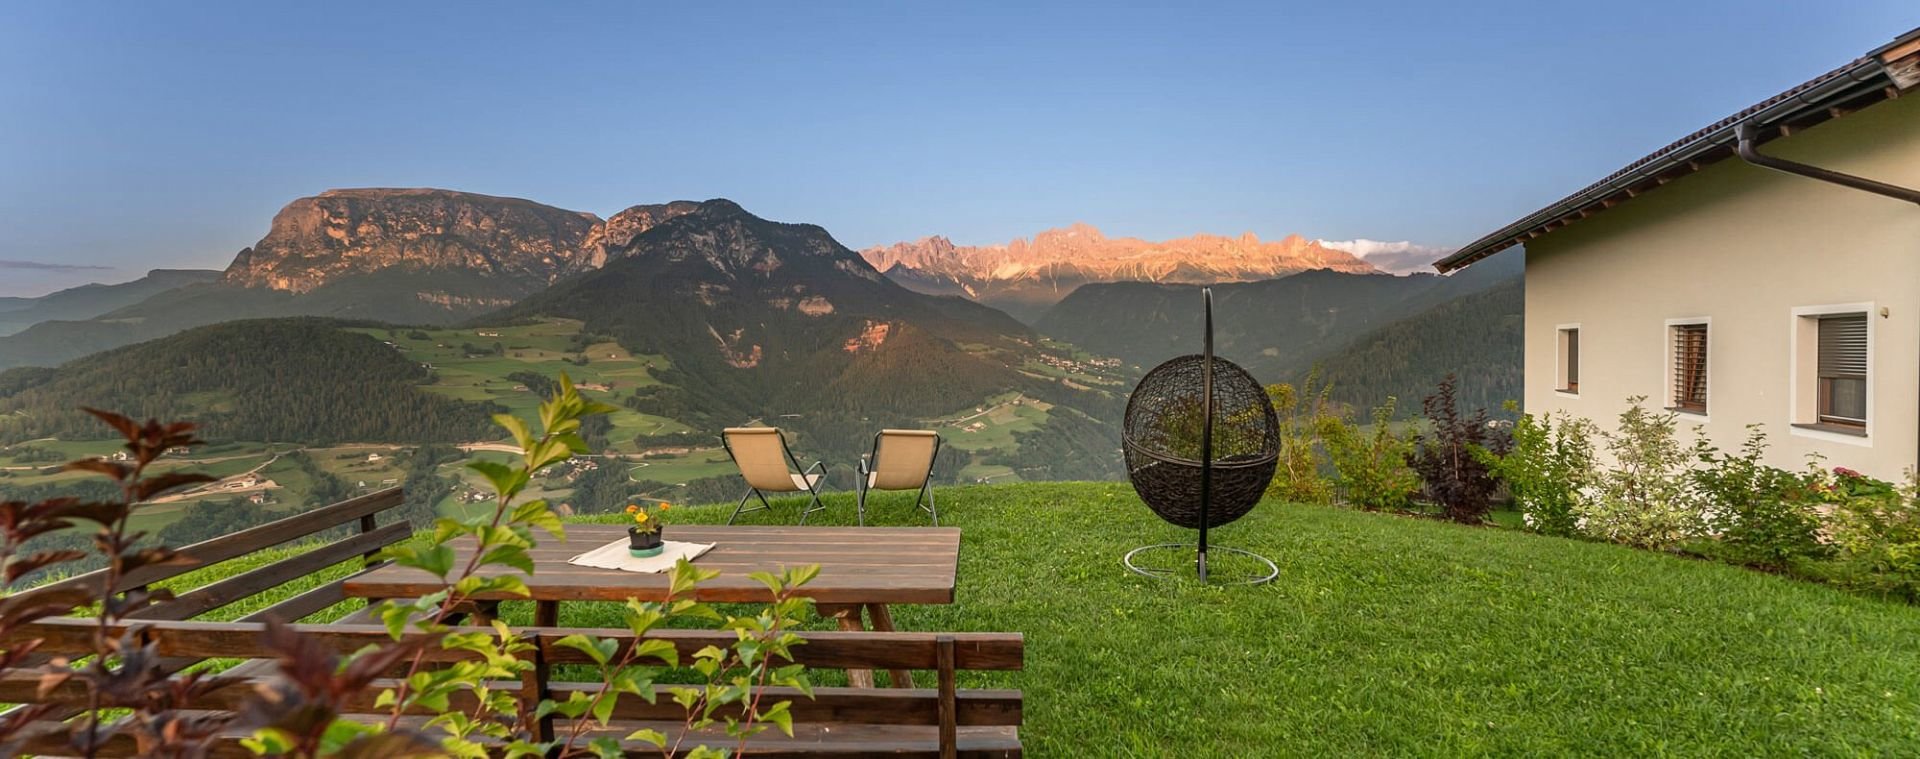 Cime maestose | Vacanza in agriturismo in Val d‘Ega con fantastica vista panoramica